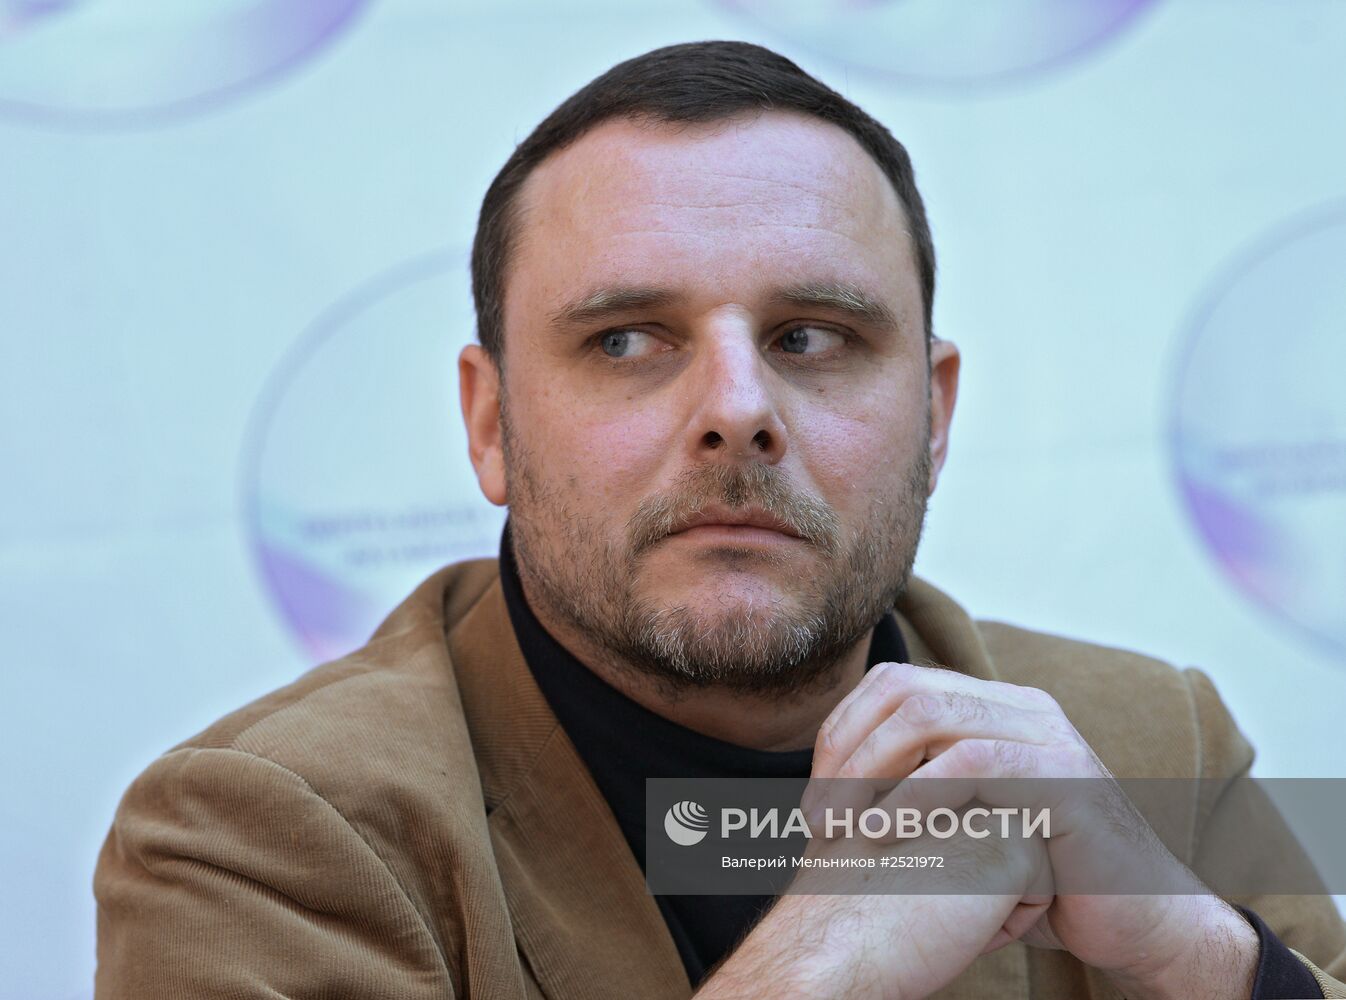 И.Плотницкий выиграл выборы главы республики ЛНР